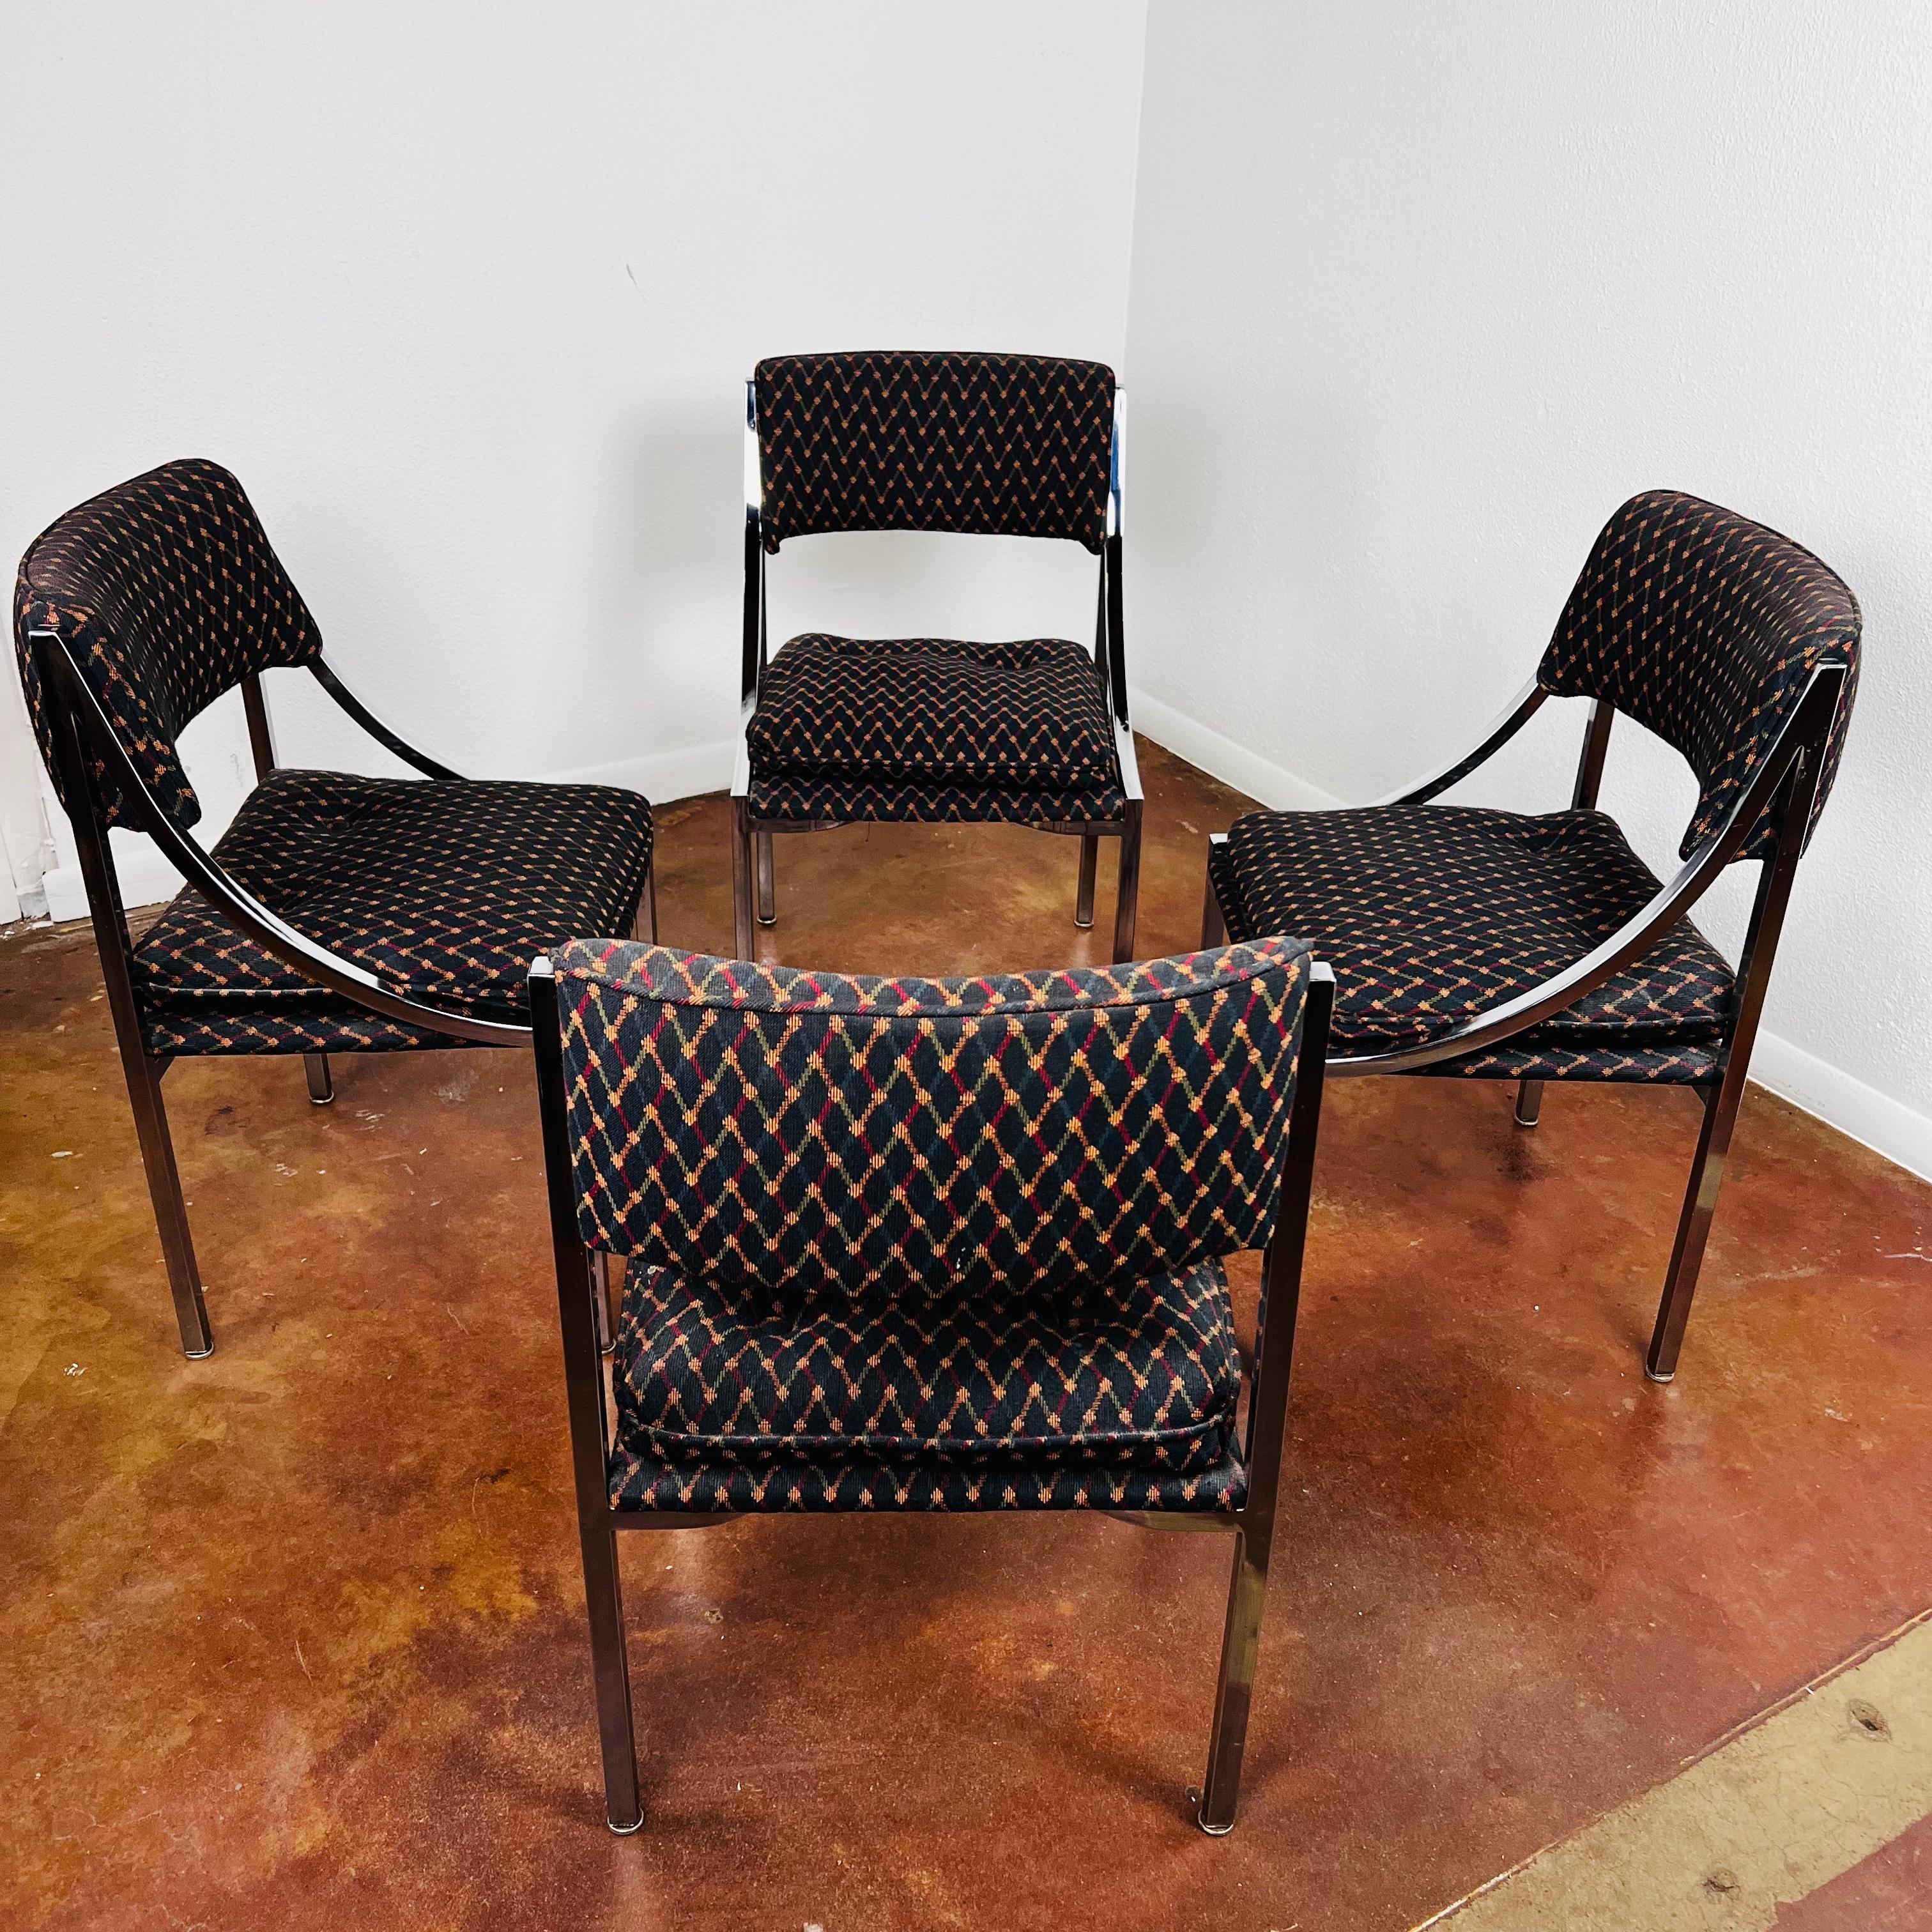 Fabelhafter Satz von 4 Vintage-Esszimmerstühlen von Wolfgang Hoffmann für Howell Co. Flache, verchromte Stahlrahmen tragen gepolsterte Sitze und Rücken. Saubere Polsterung, einige alters- und gebrauchsbedingte Gebrauchsspuren, aber keine Risse,